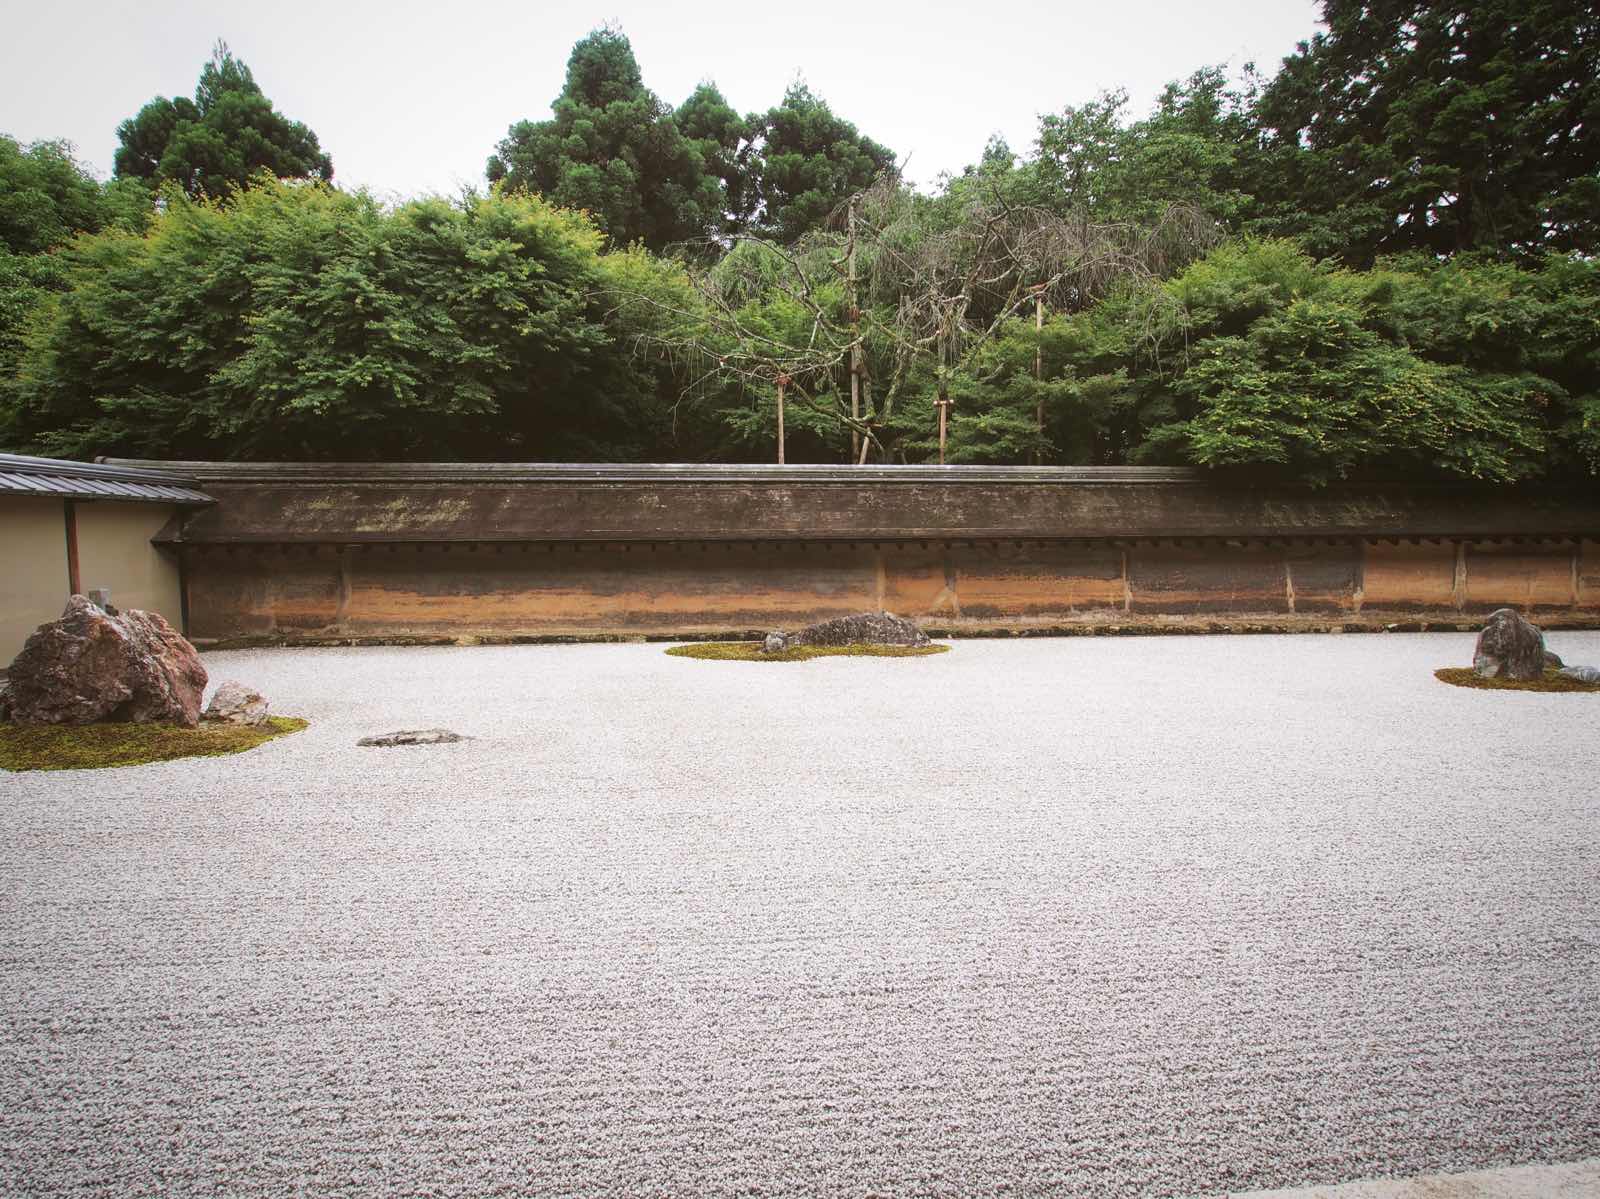 来这里认识了日本的枯木山水园林。小庭院里一共15颗石头，还有一些精心布